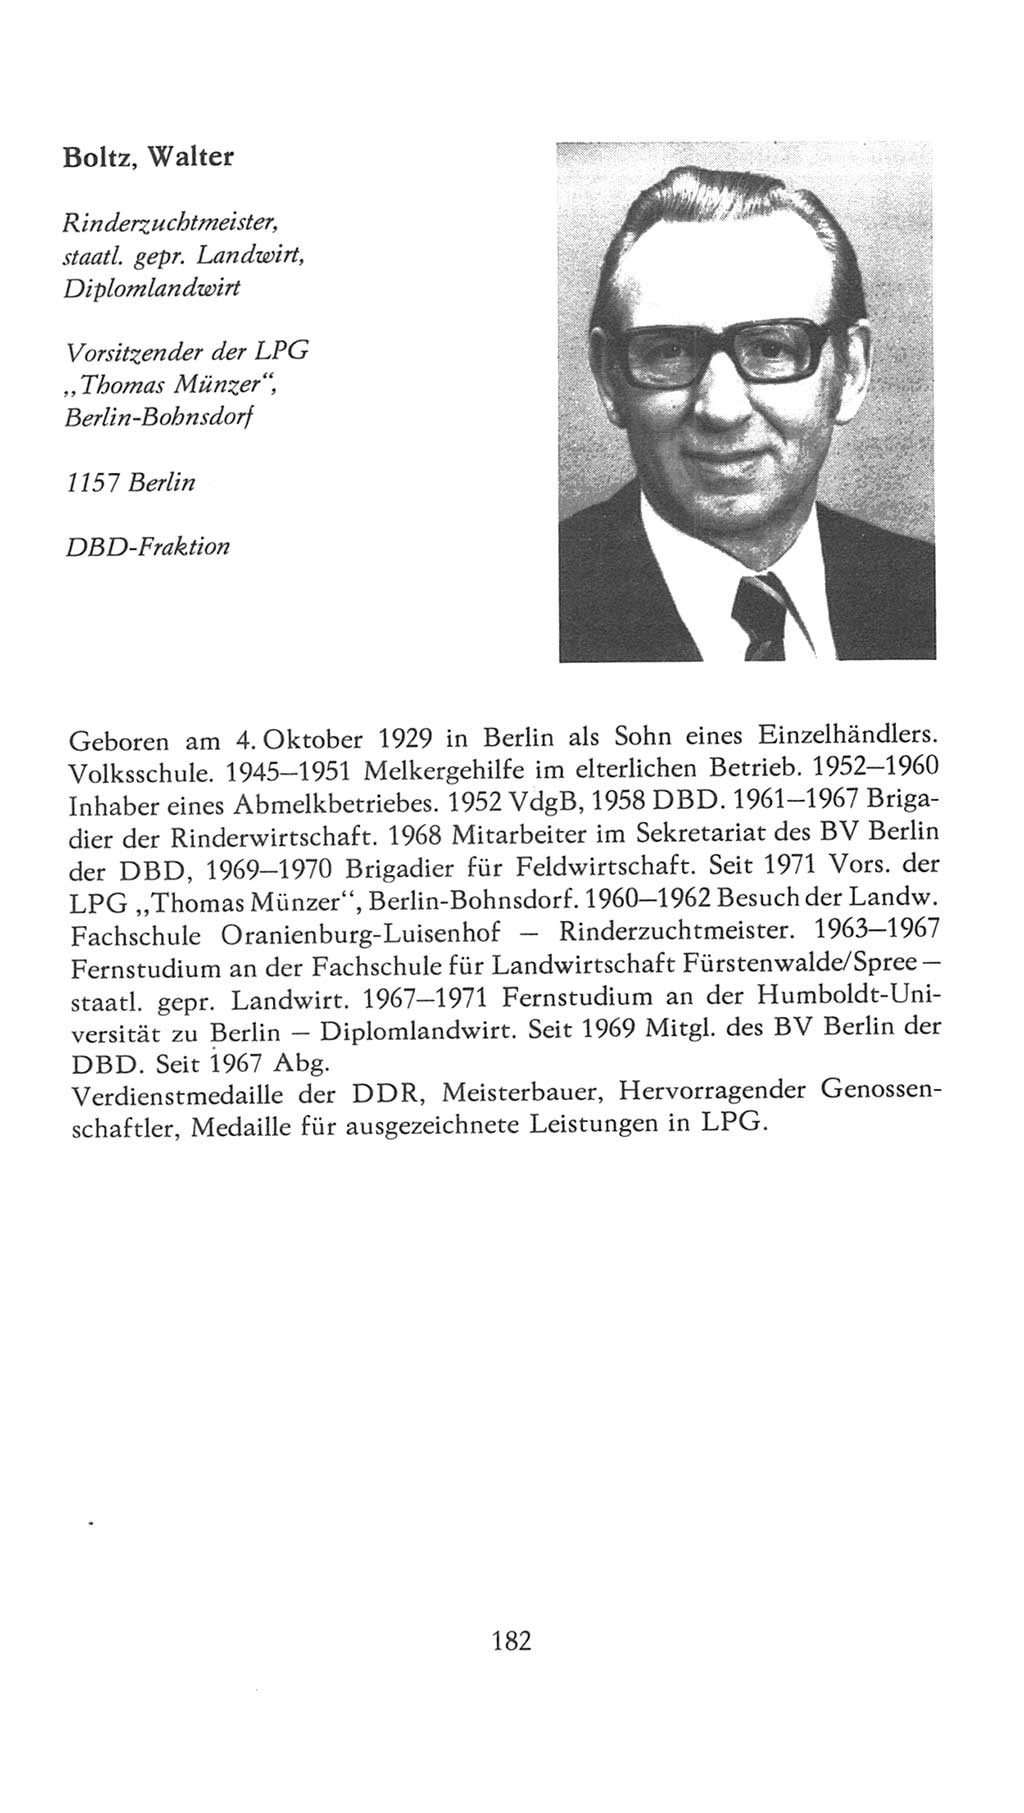 Volkskammer (VK) der Deutschen Demokratischen Republik (DDR), 7. Wahlperiode 1976-1981, Seite 182 (VK. DDR 7. WP. 1976-1981, S. 182)